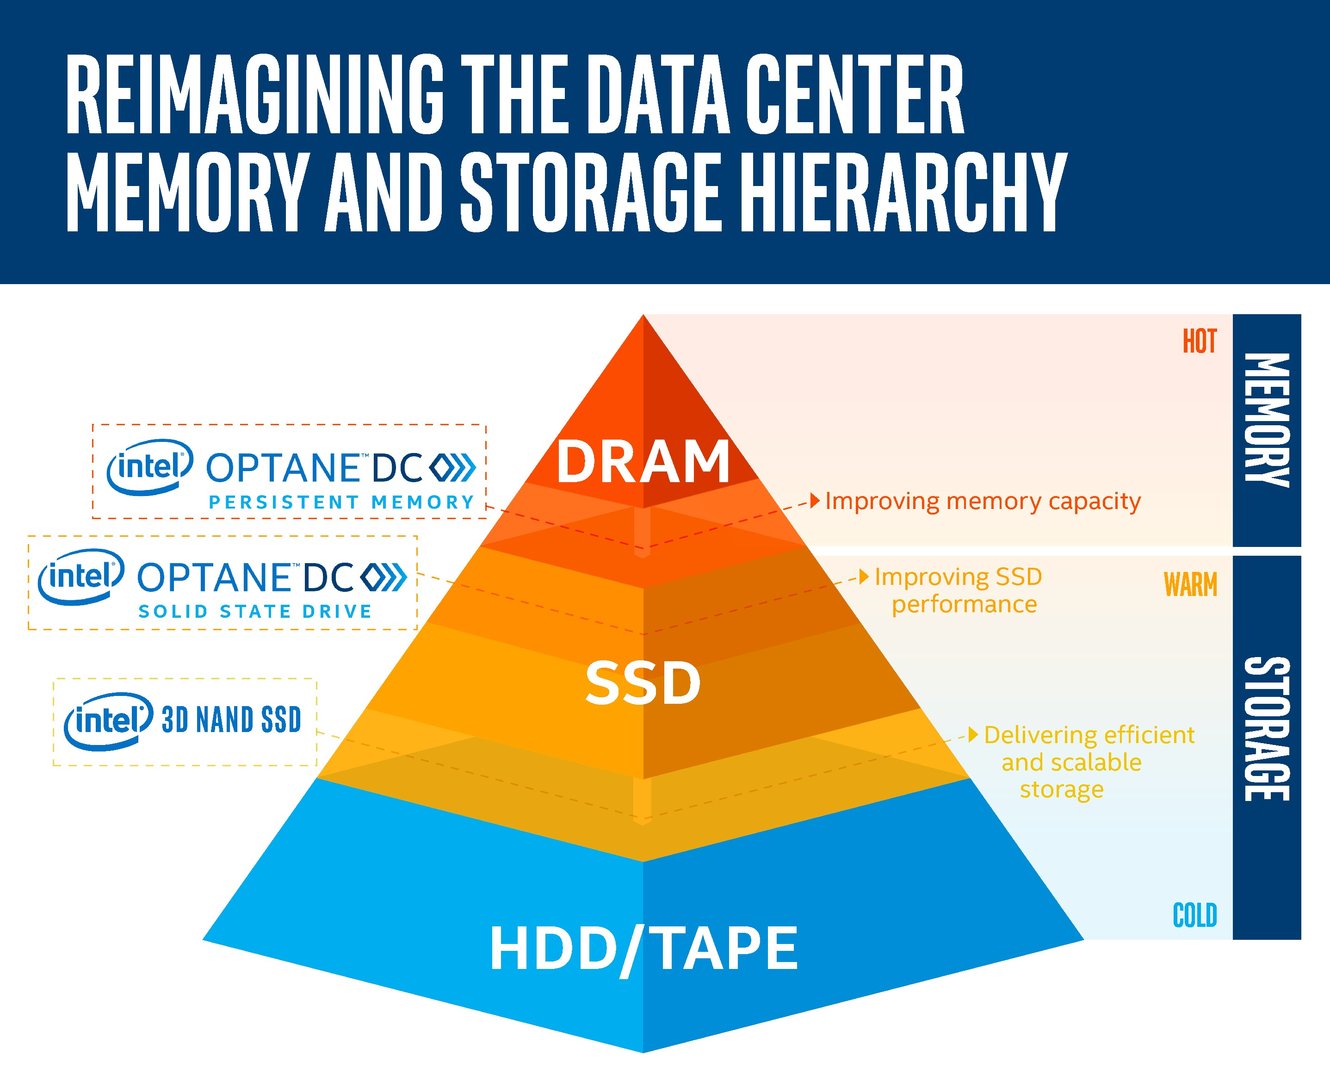 Intel Optane DC Persistent Memory